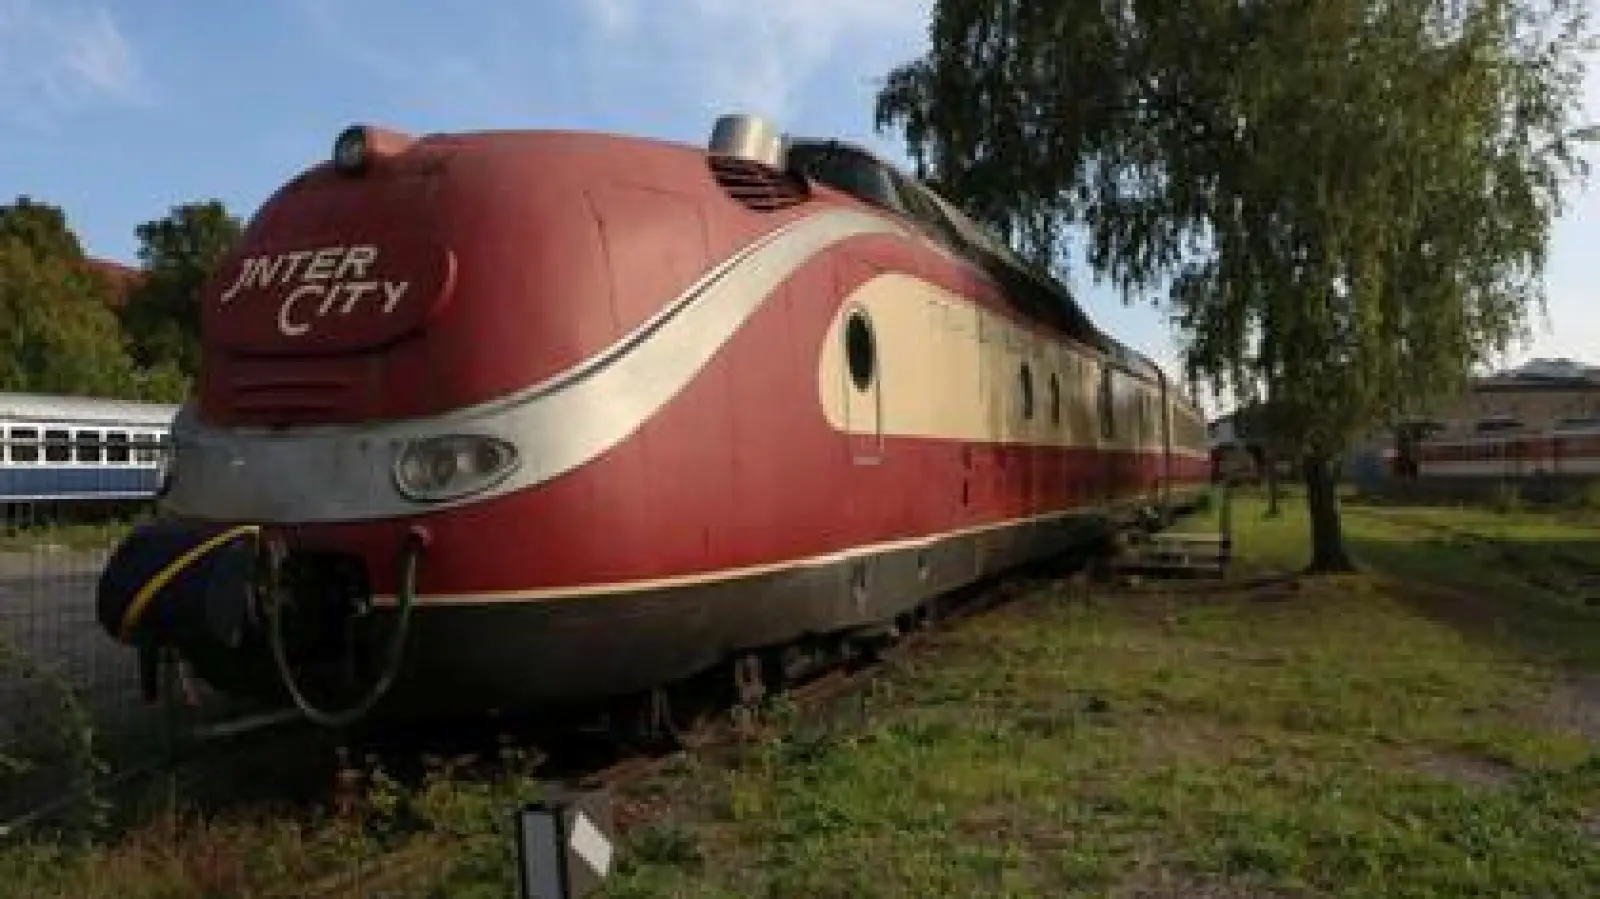 Nicht nur für Eisenbahn-Fans:   Die historischen Loks aus ganz Europa vermitteln neben Eisenbahn-Historie auch Wissen rund um die europäische Geschichte. 	Foto: Janina Funk (Foto: Janina Funk)